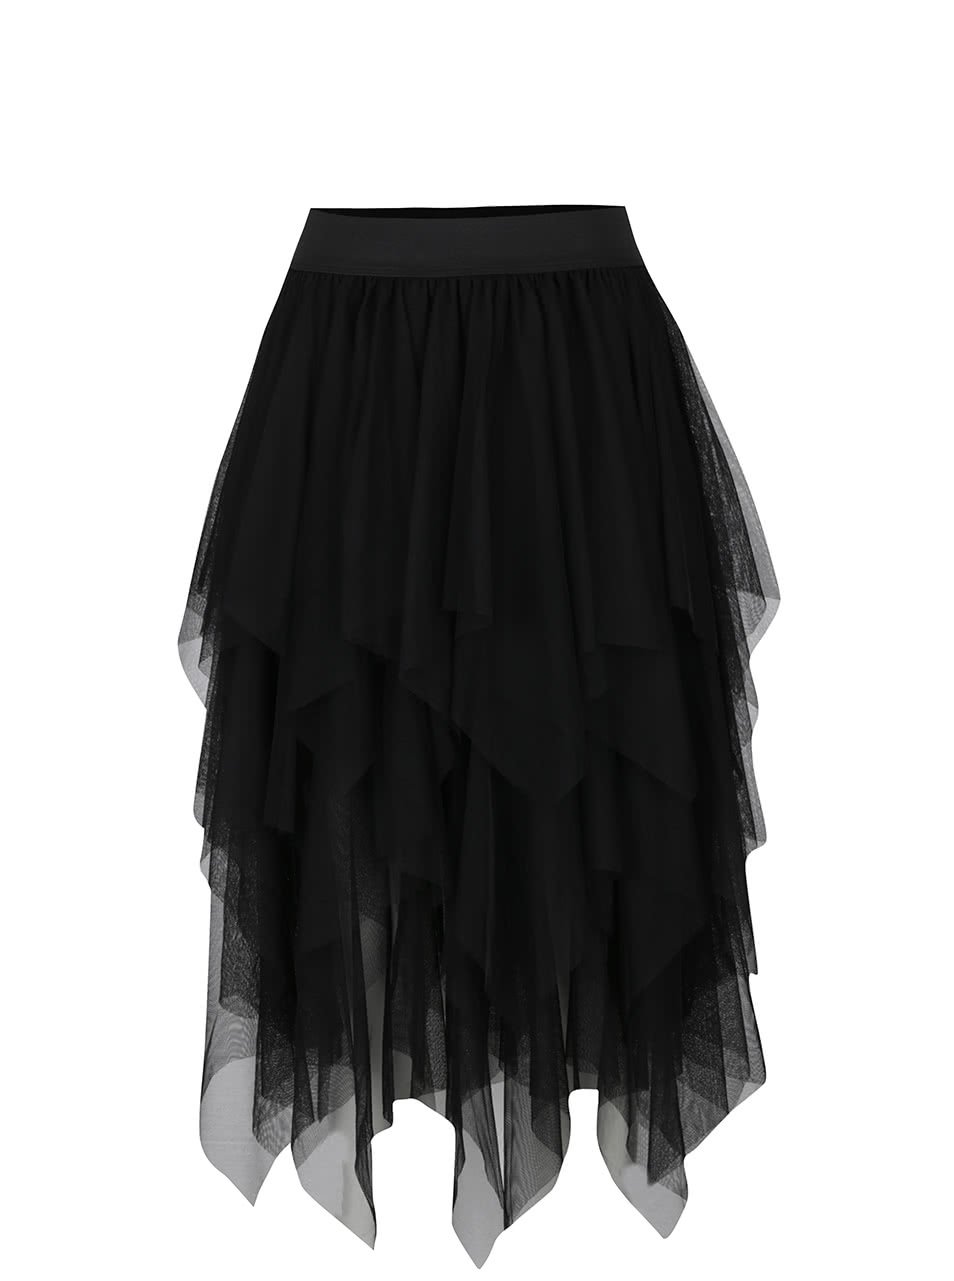 Černá tylová sukně Moda Tulle